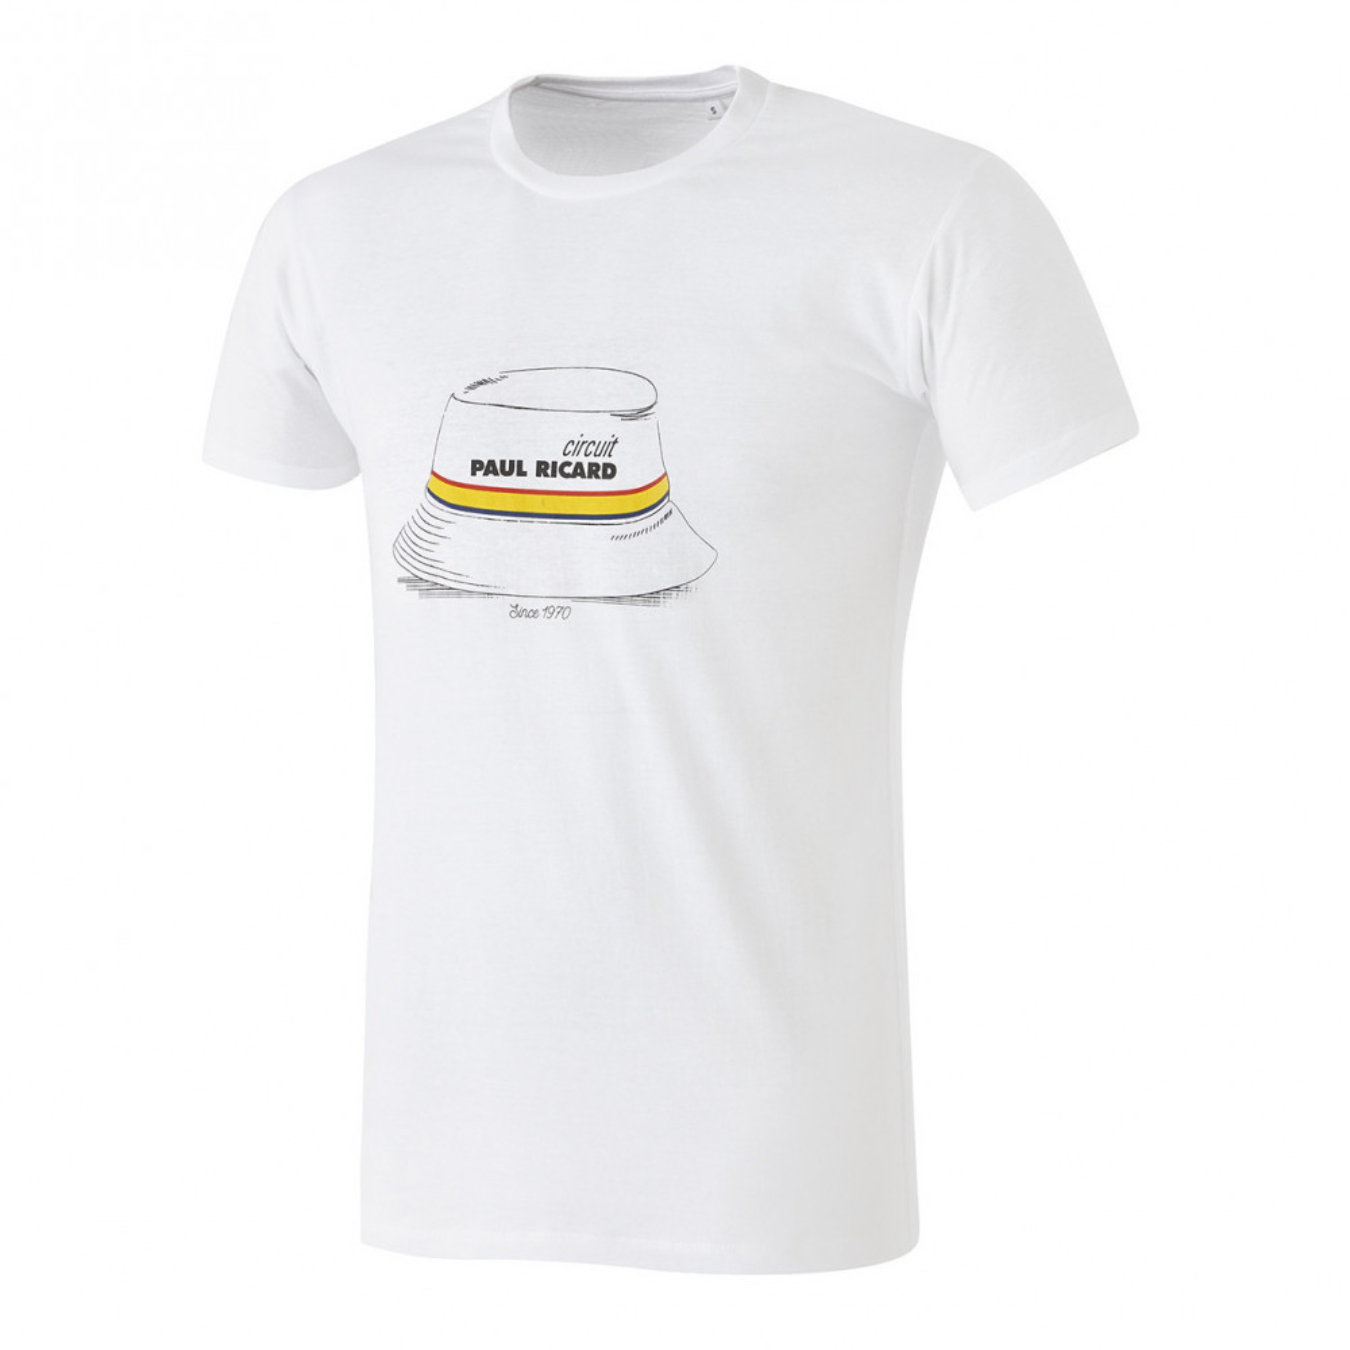 T-Shirt CIRCUIT PAUL RICARD Bob Blanc pour Homme- En vente sur ORECA STORE